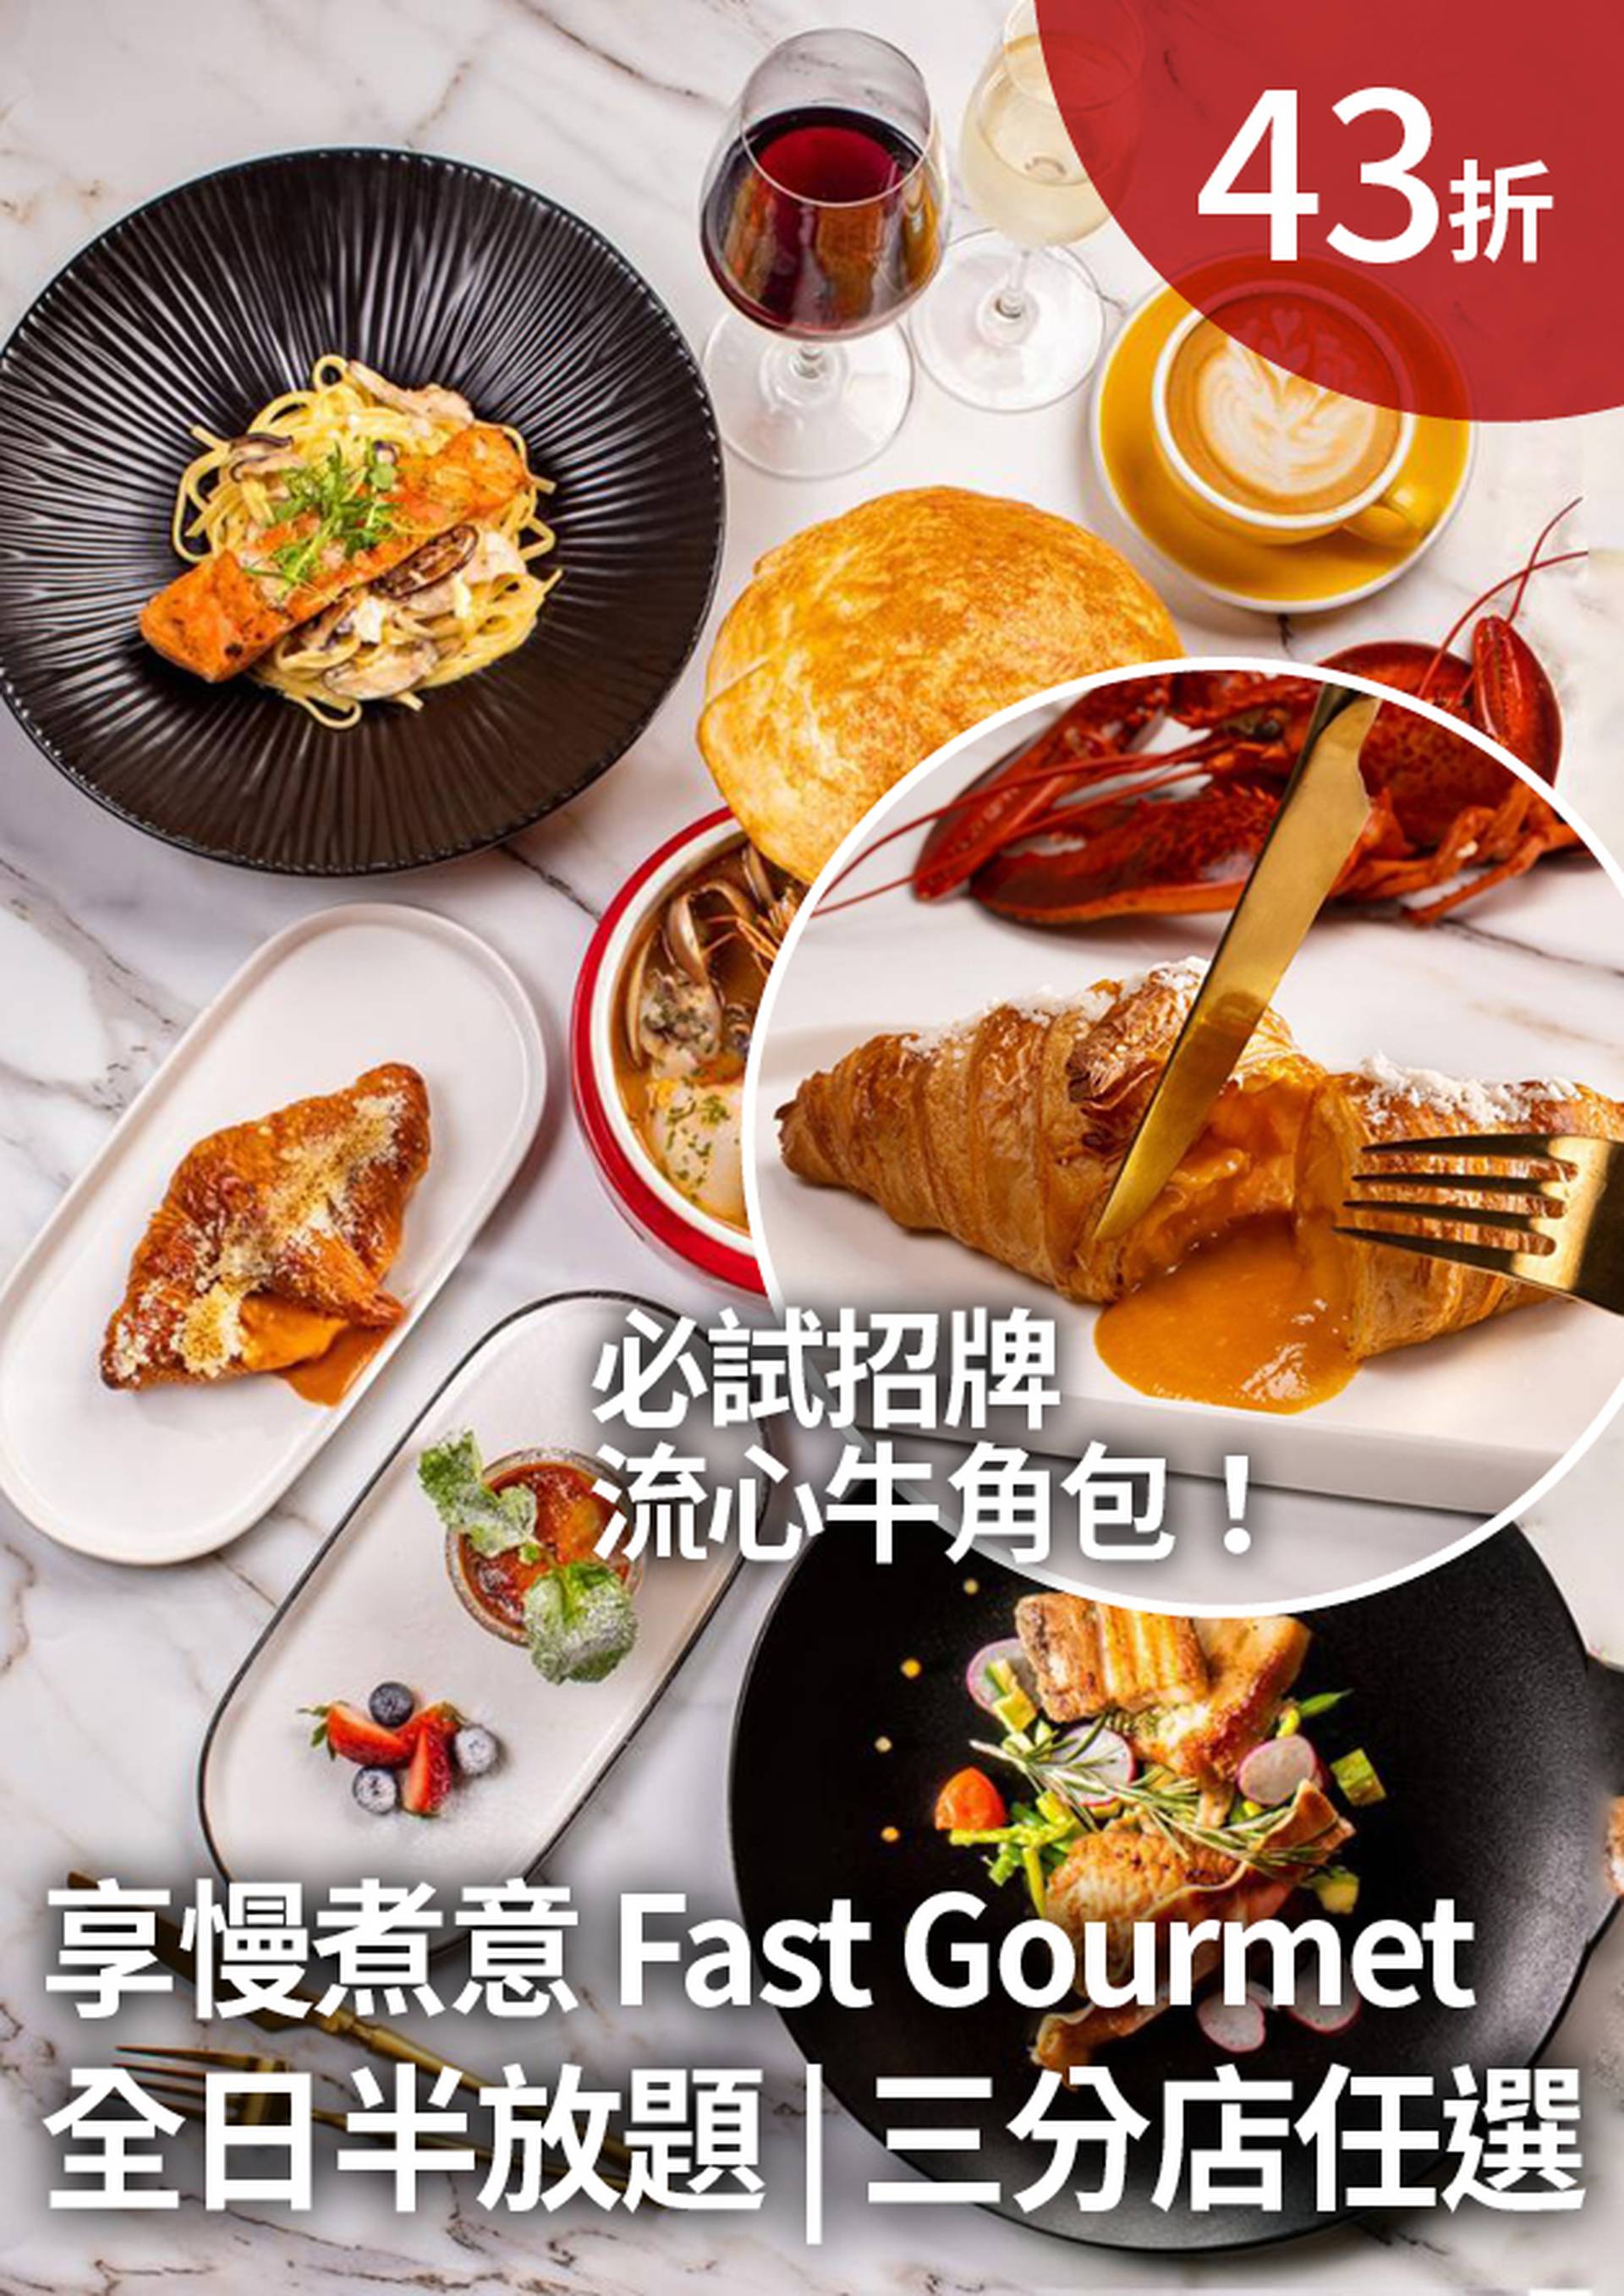 享慢煮意 Fast Gourmet | 半放題 | 招牌⿓蝦湯流⼼⽜⾓包 | 元朗分店